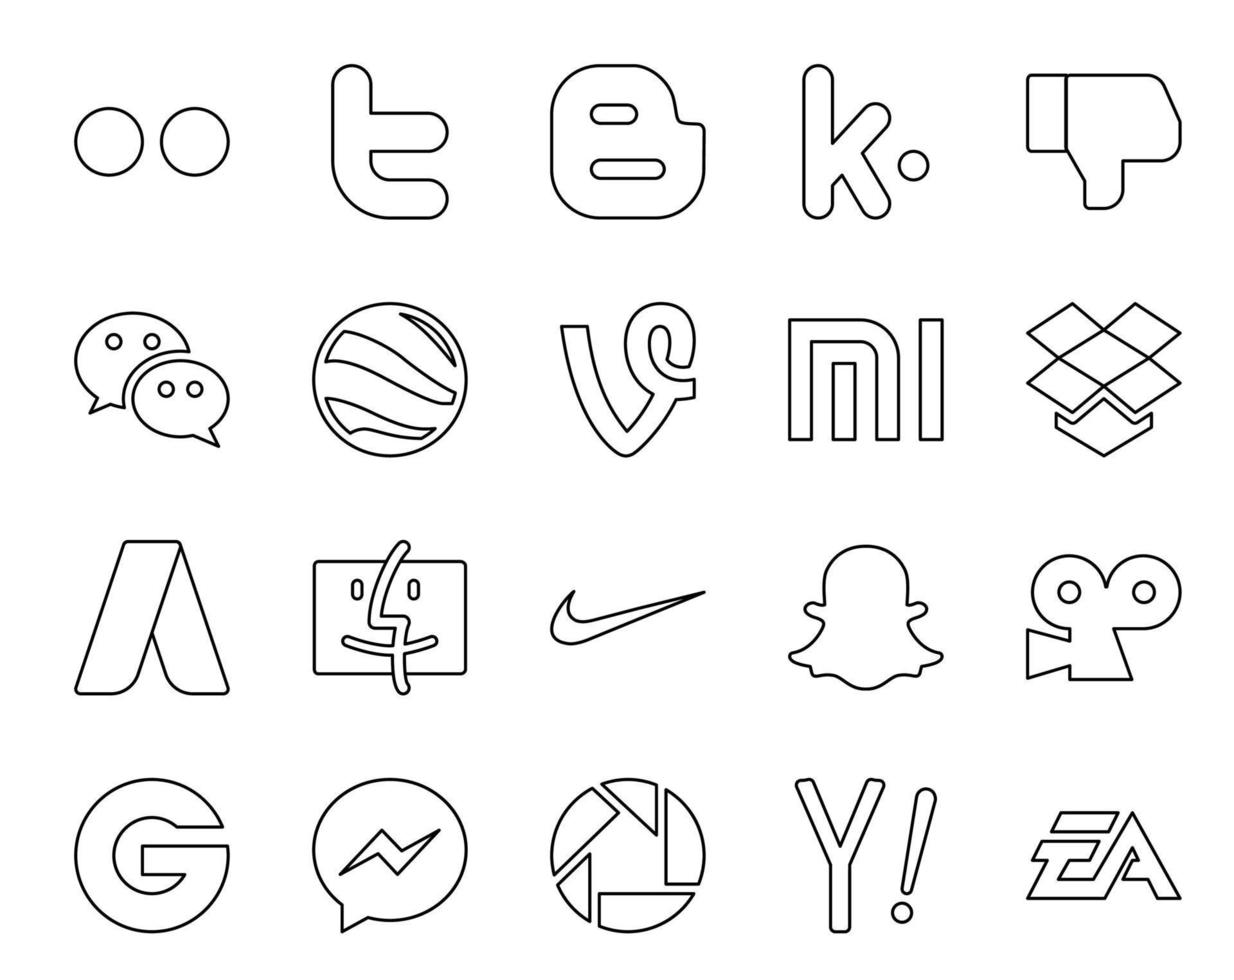 20 Symbolpakete für soziale Medien, einschließlich Groupon, Snapchat, Google Earth, Nike Adwords vektor